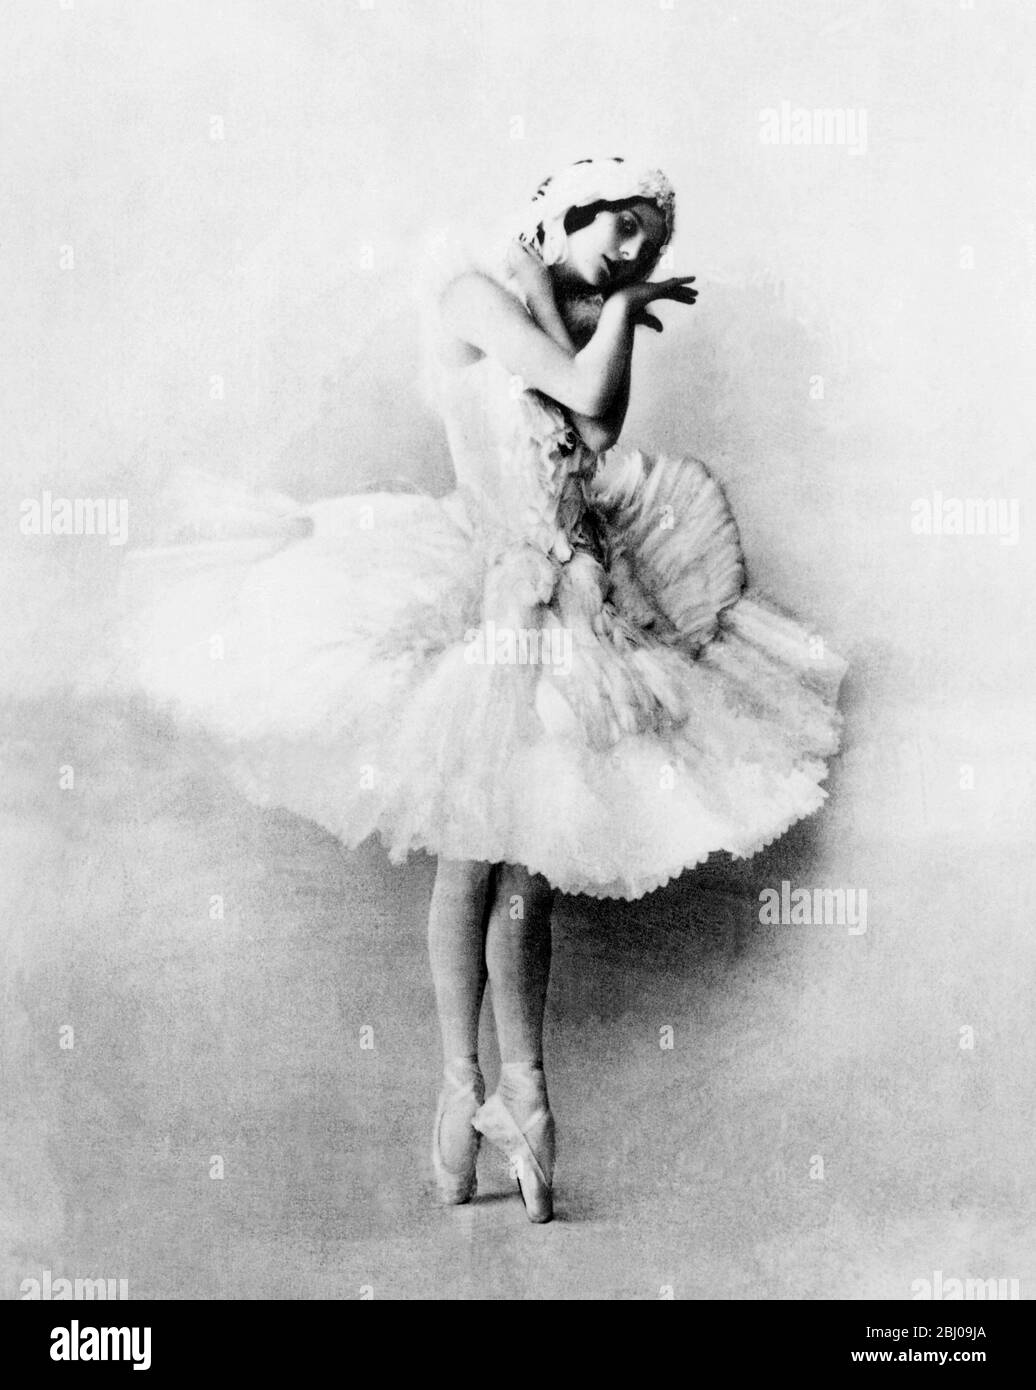 Anna Pavlova als Schwan - Skizzenergänzung - das auf Meringue basierende Dessert Pavlova ist nach der russischen Ballerina Anna Pavlova benannt. Das Dessert soll zu Ehren der Tänzerin während oder nach einer ihrer Touren nach Australien und Neuseeland in den 1920er Jahren entstanden sein. Stockfoto